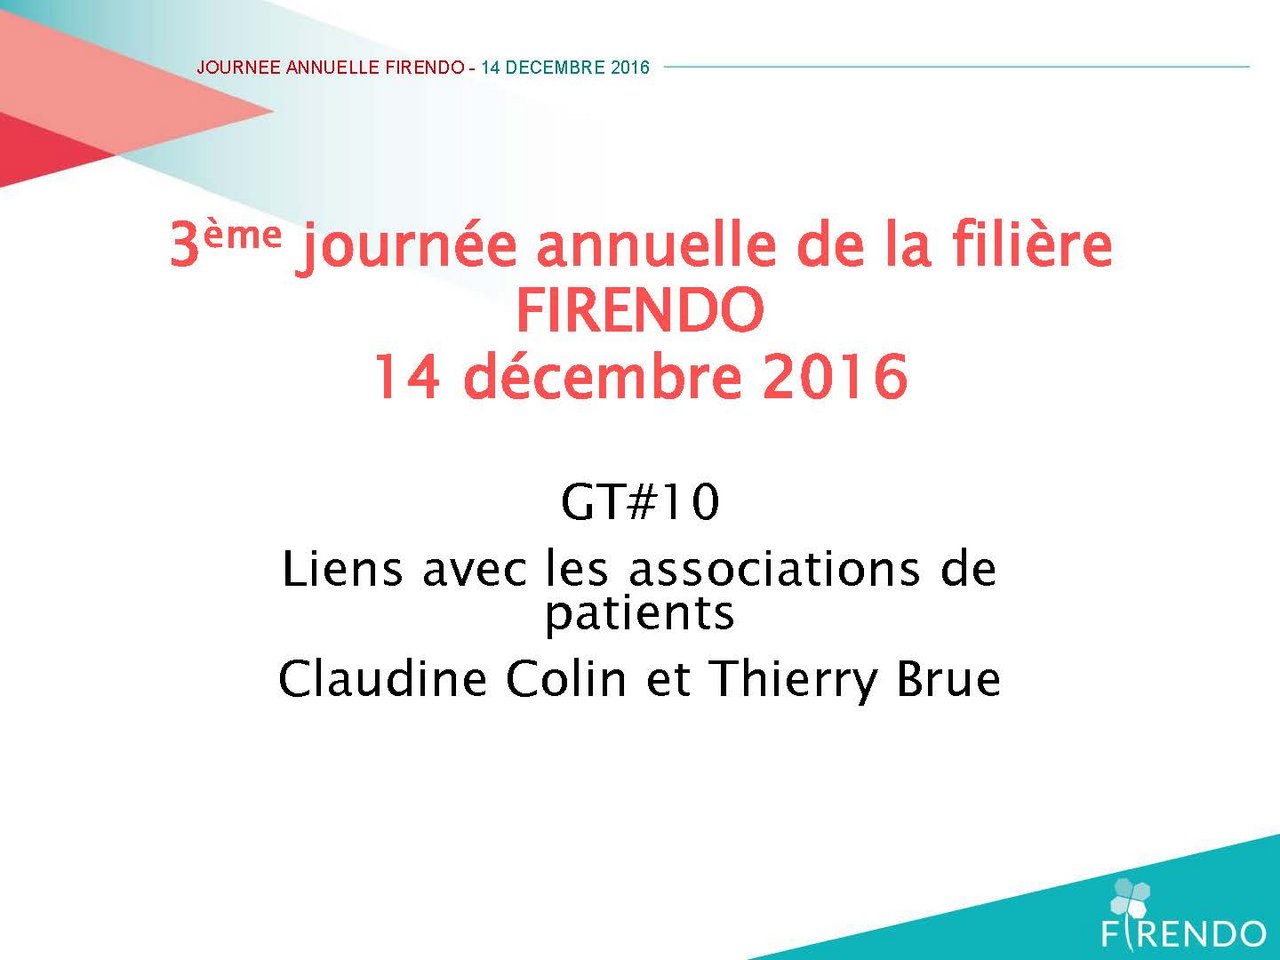 FIRENDO Journée Annuelle 2016 Claudine Colin Thierry Brue Liens avec associations patients